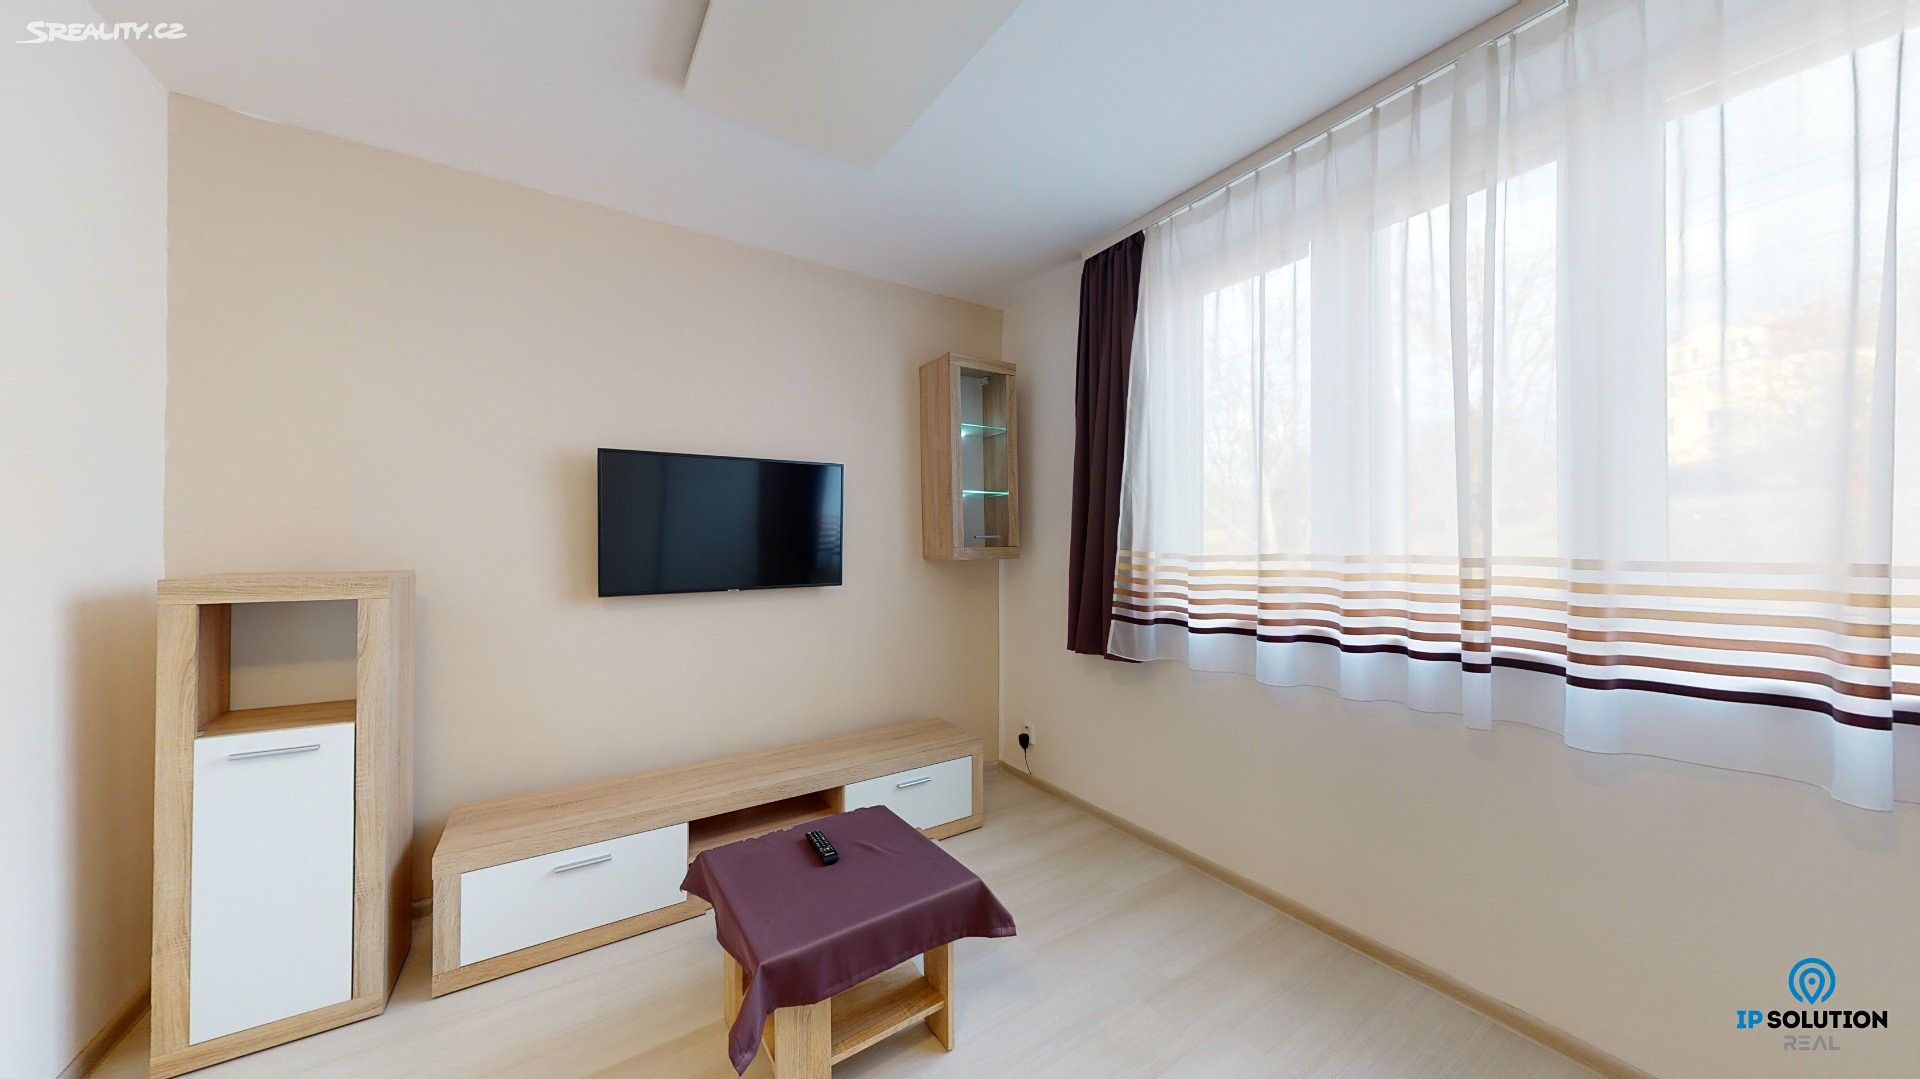 Pronájem bytu 1+1 36 m², Hlavní, Brno - Komín